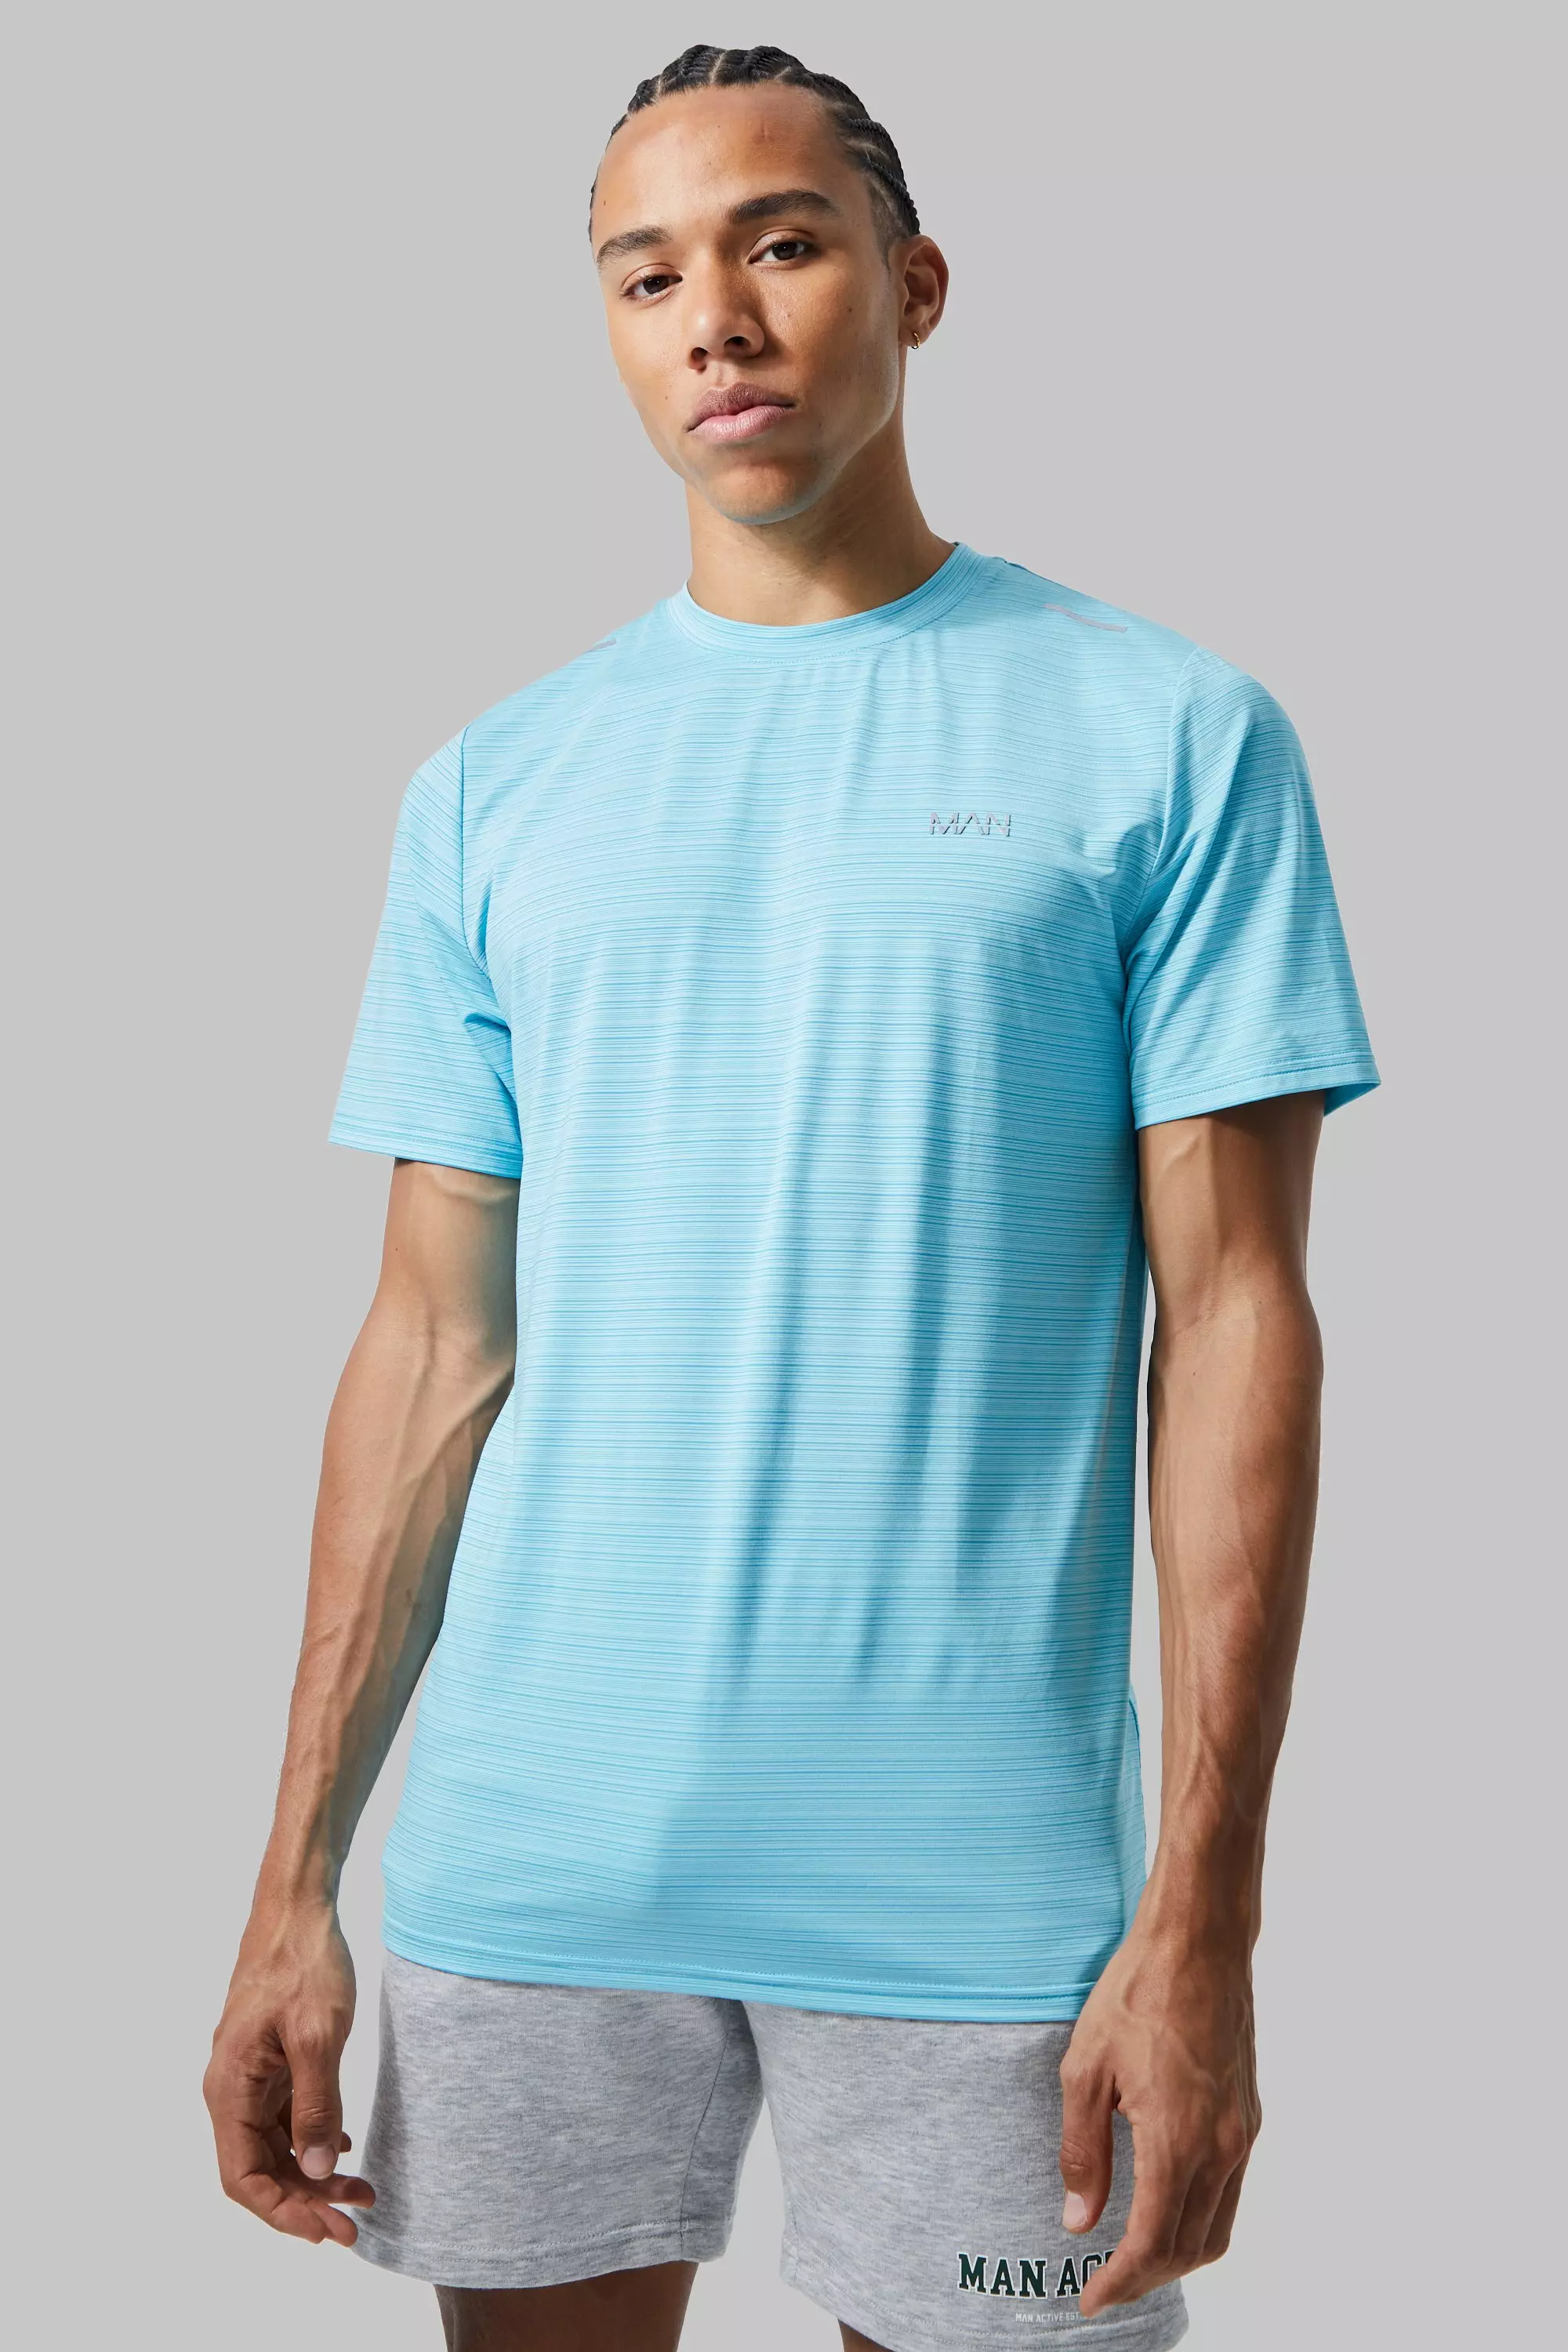 Tall Man Active Lightweight Performance T-shirt Light blue